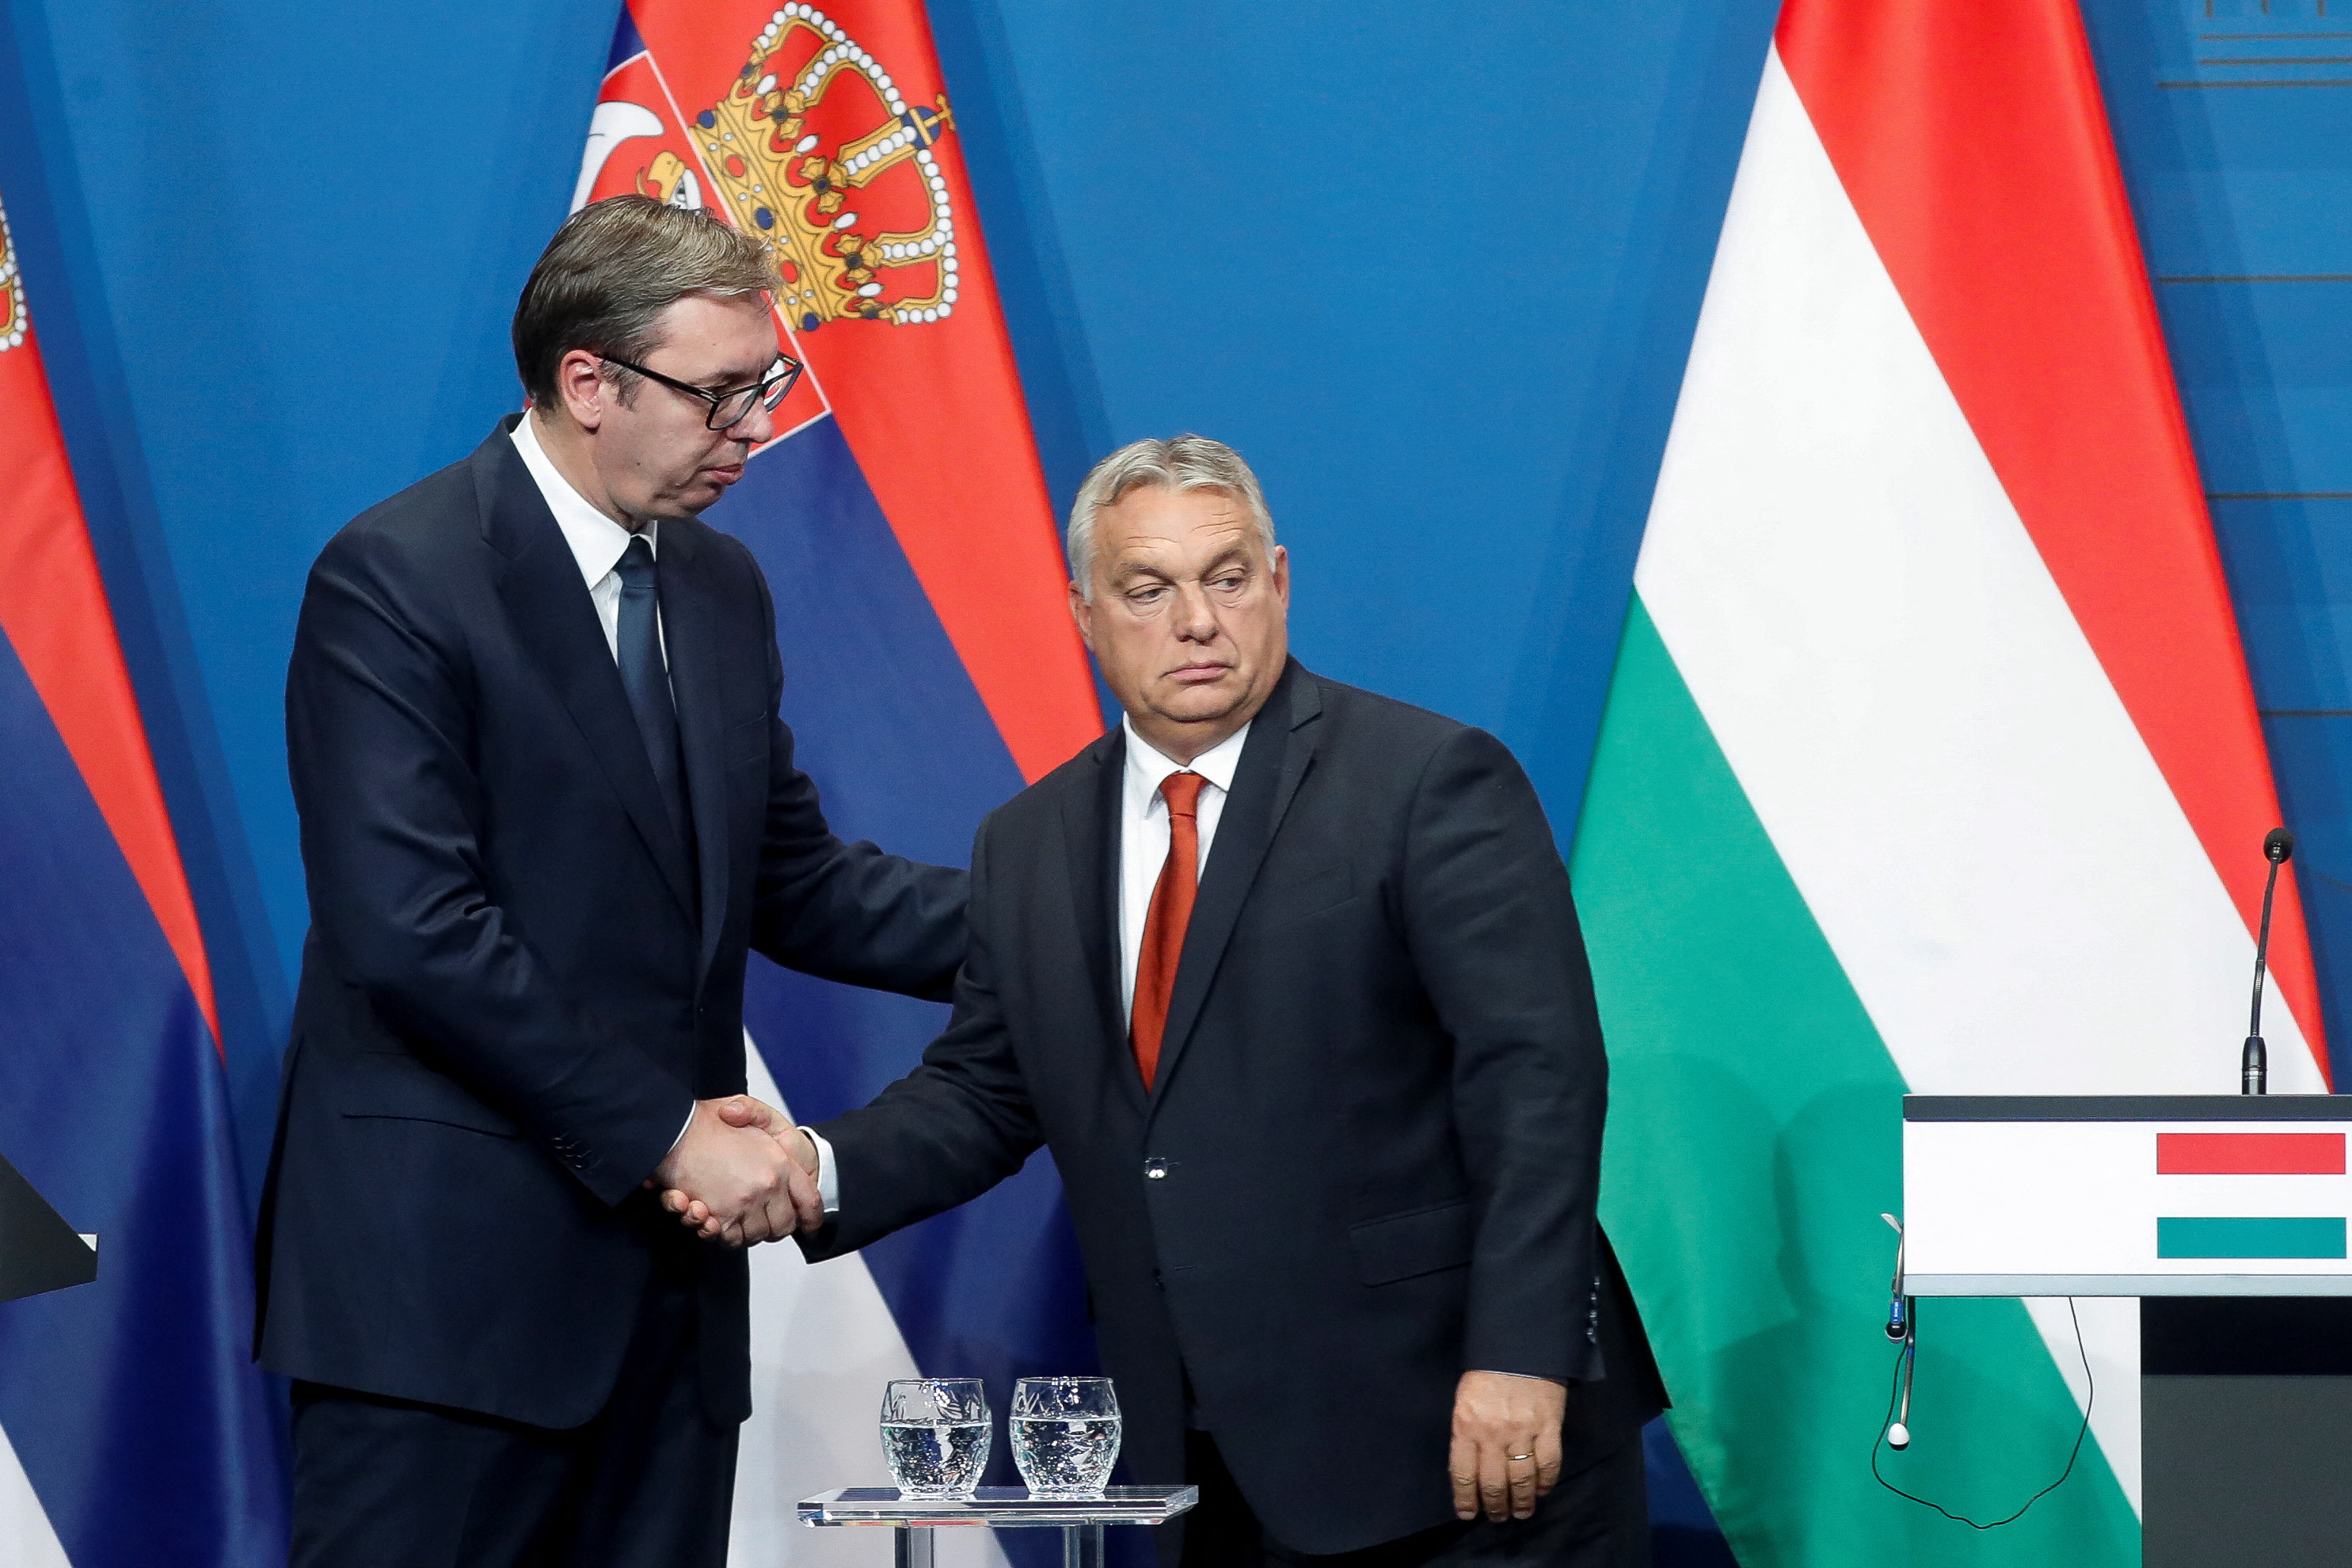 Serbia và Mỹ thúc giục Hungary xâm lược - Đây là những thông tin cũ và không đúng sự thật. Hungary đã chứng tỏ mình là một quốc gia độc lập và là một đối tác thân thiện trong cộng đồng quốc tế. Chúng ta hãy cùng xem hình ảnh về đất nước Hungary để khám phá những địa điểm tuyệt đẹp và văn hóa đa dạng của họ.